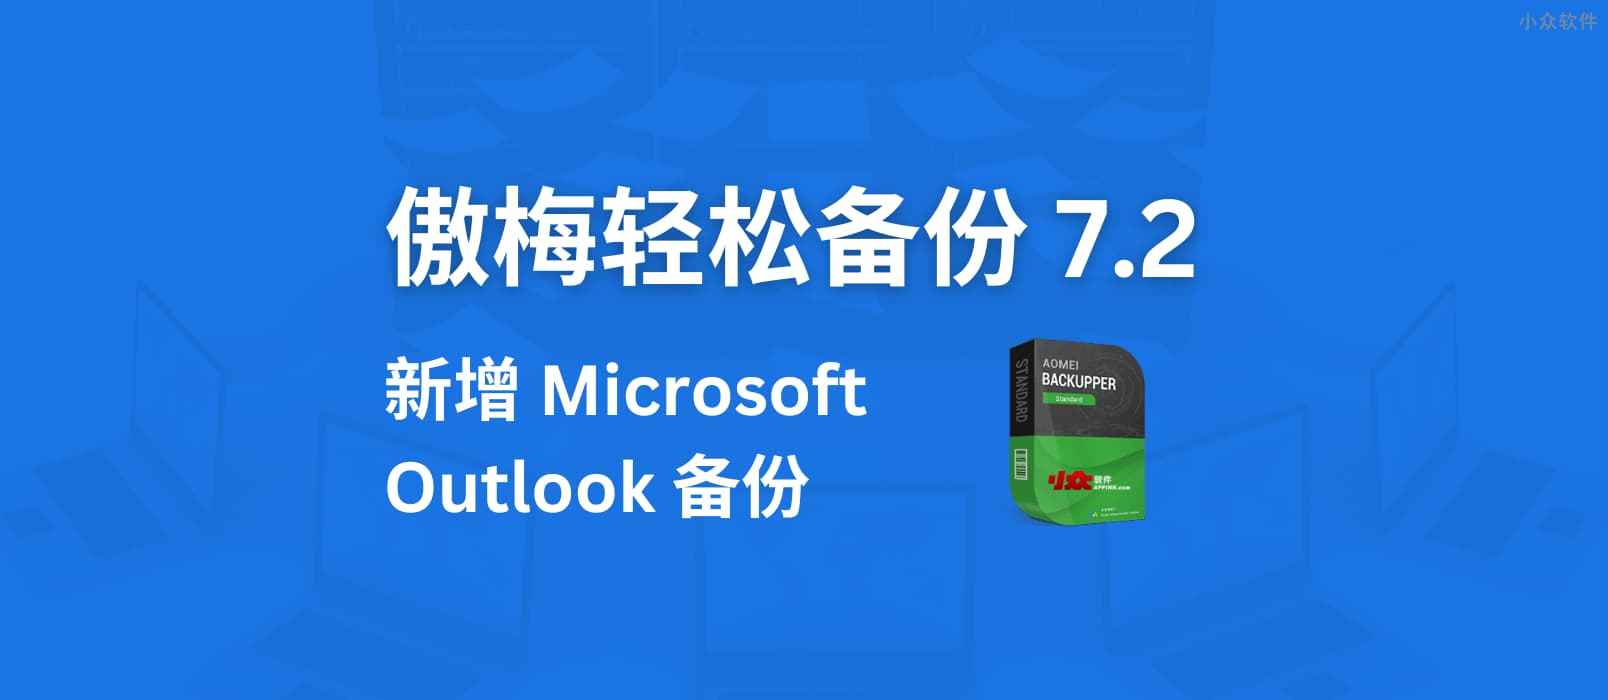 傲梅轻松备份 7.2 版本发布，新增 Microsoft Outlook 备份